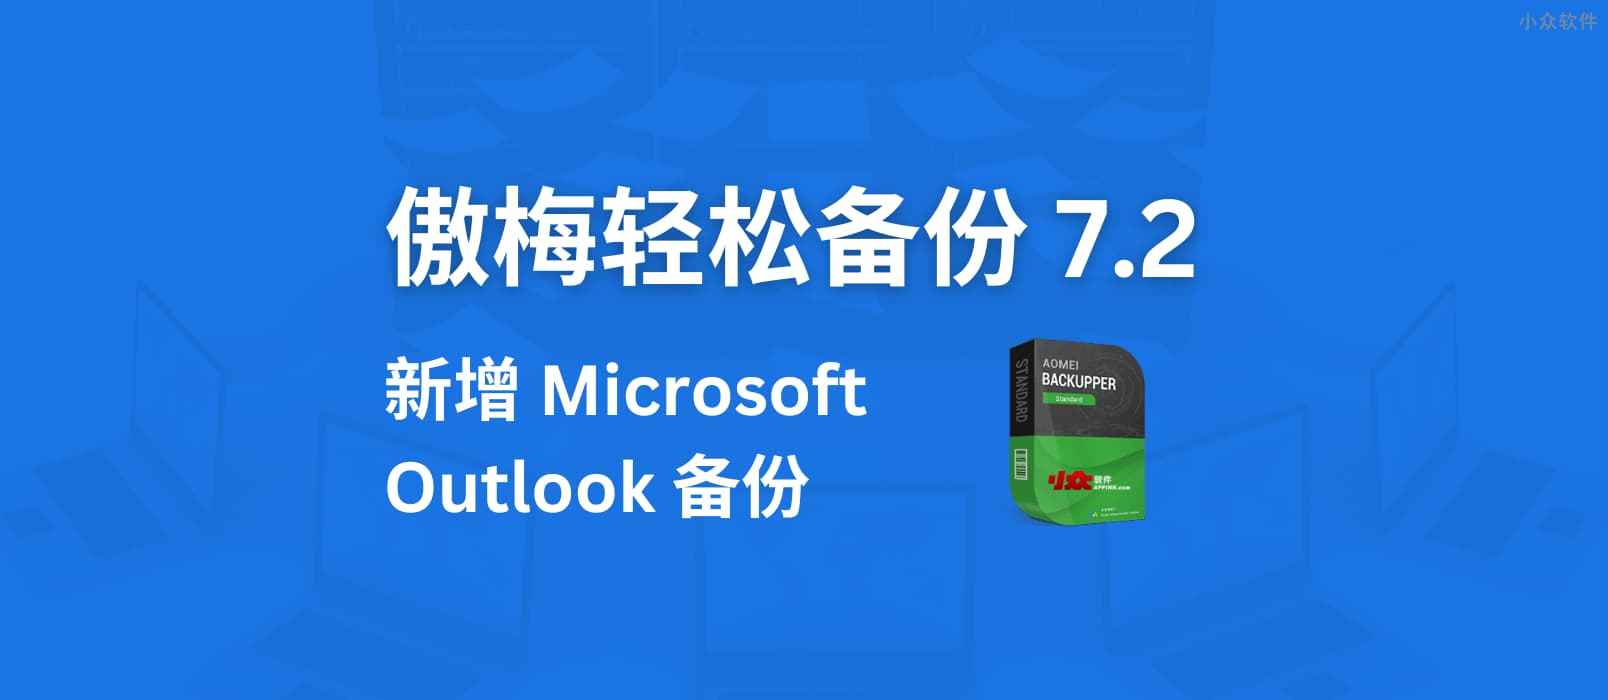 傲梅轻松备份 7.2 版本发布，新增 Microsoft Outlook 备份